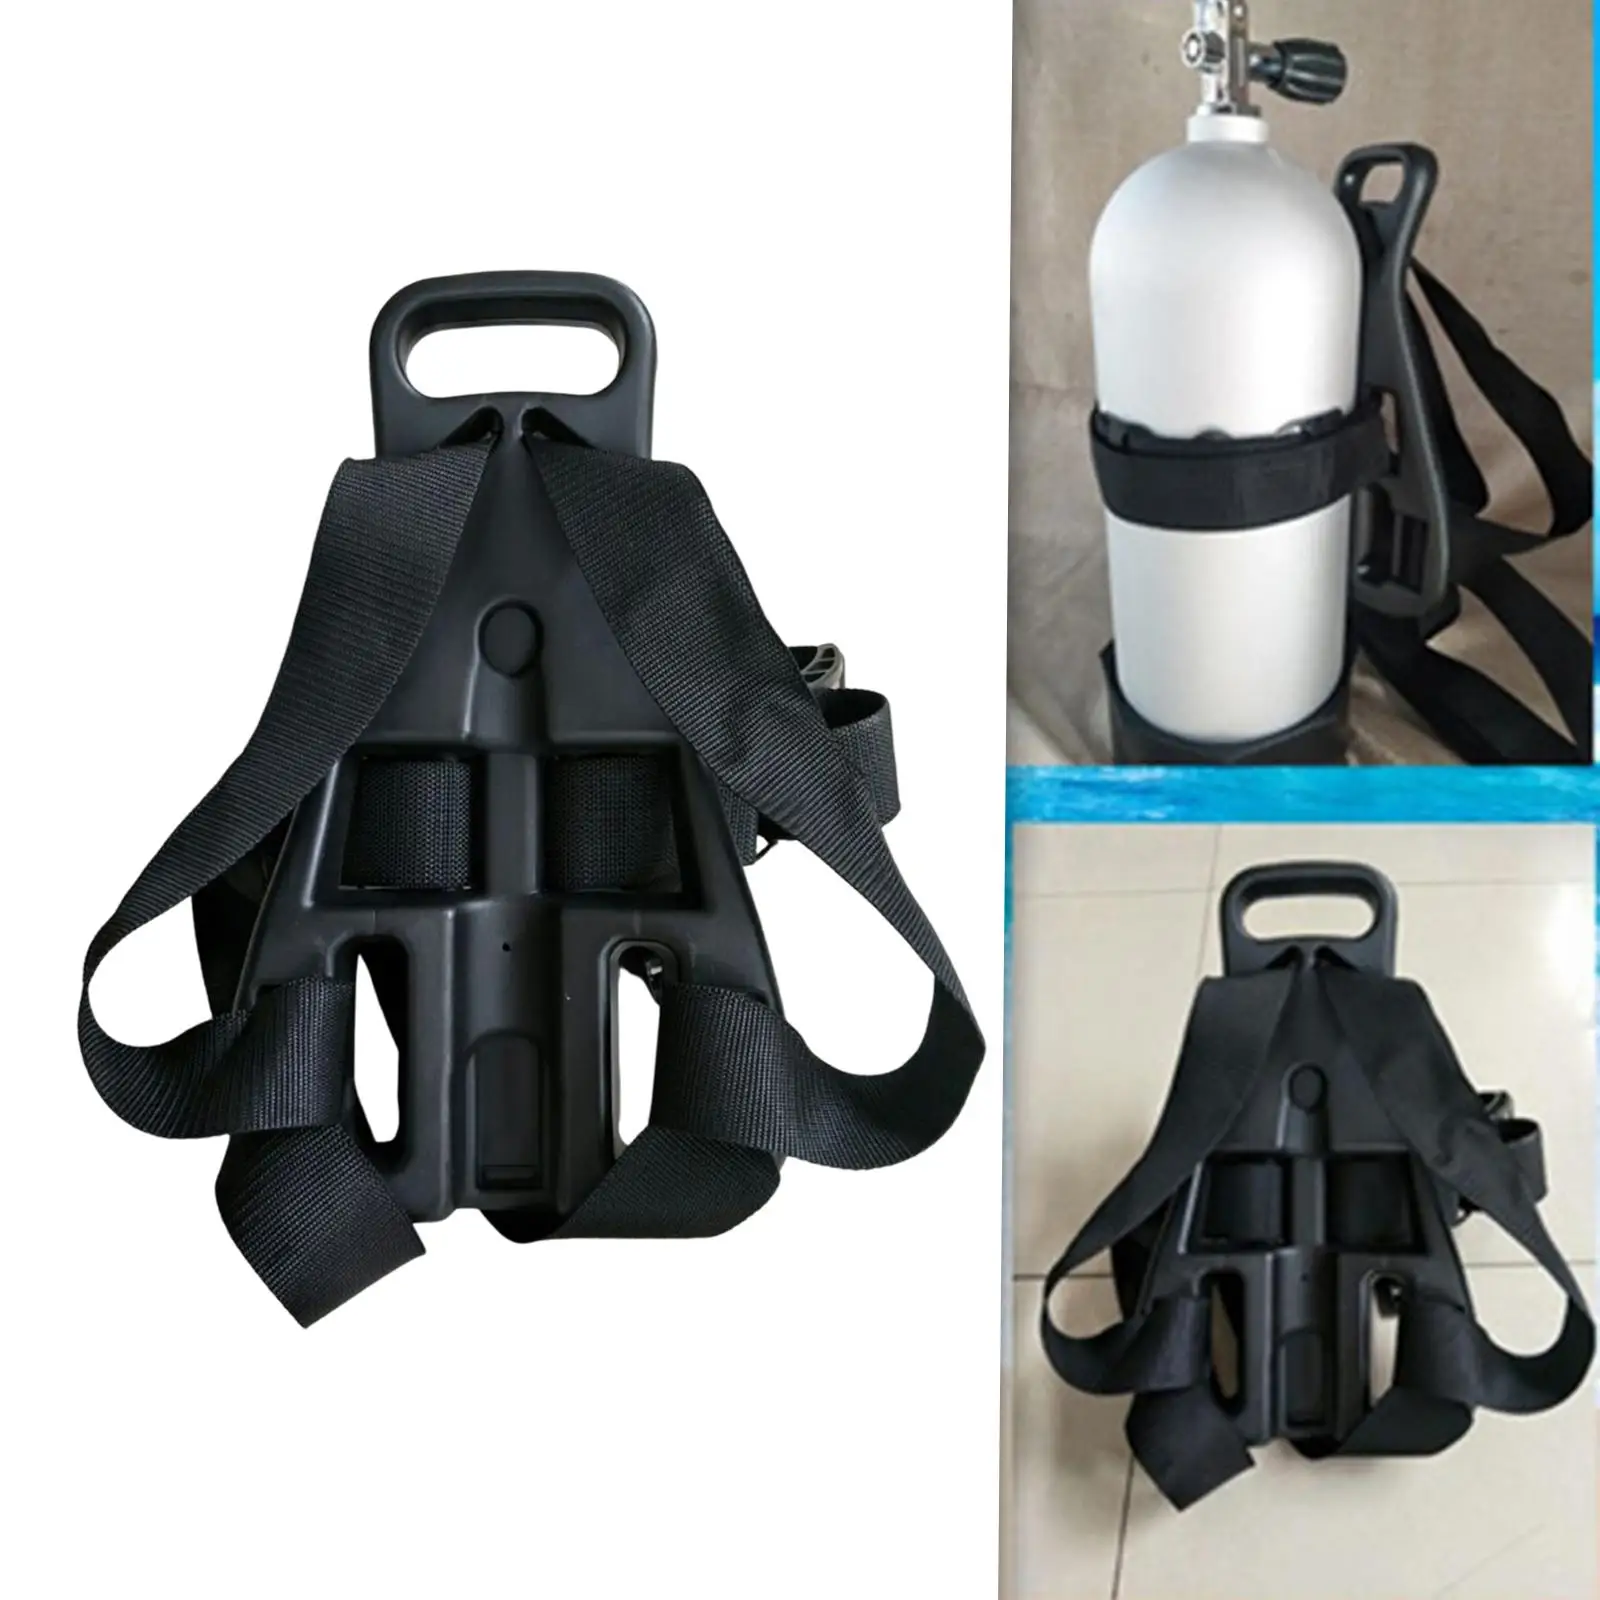 Scuba Diving Tank Back Pack Snorkeling Freediving Dive Single Oxygen Bottle Support Holder Bracket Backpack for Snorkeling Accs